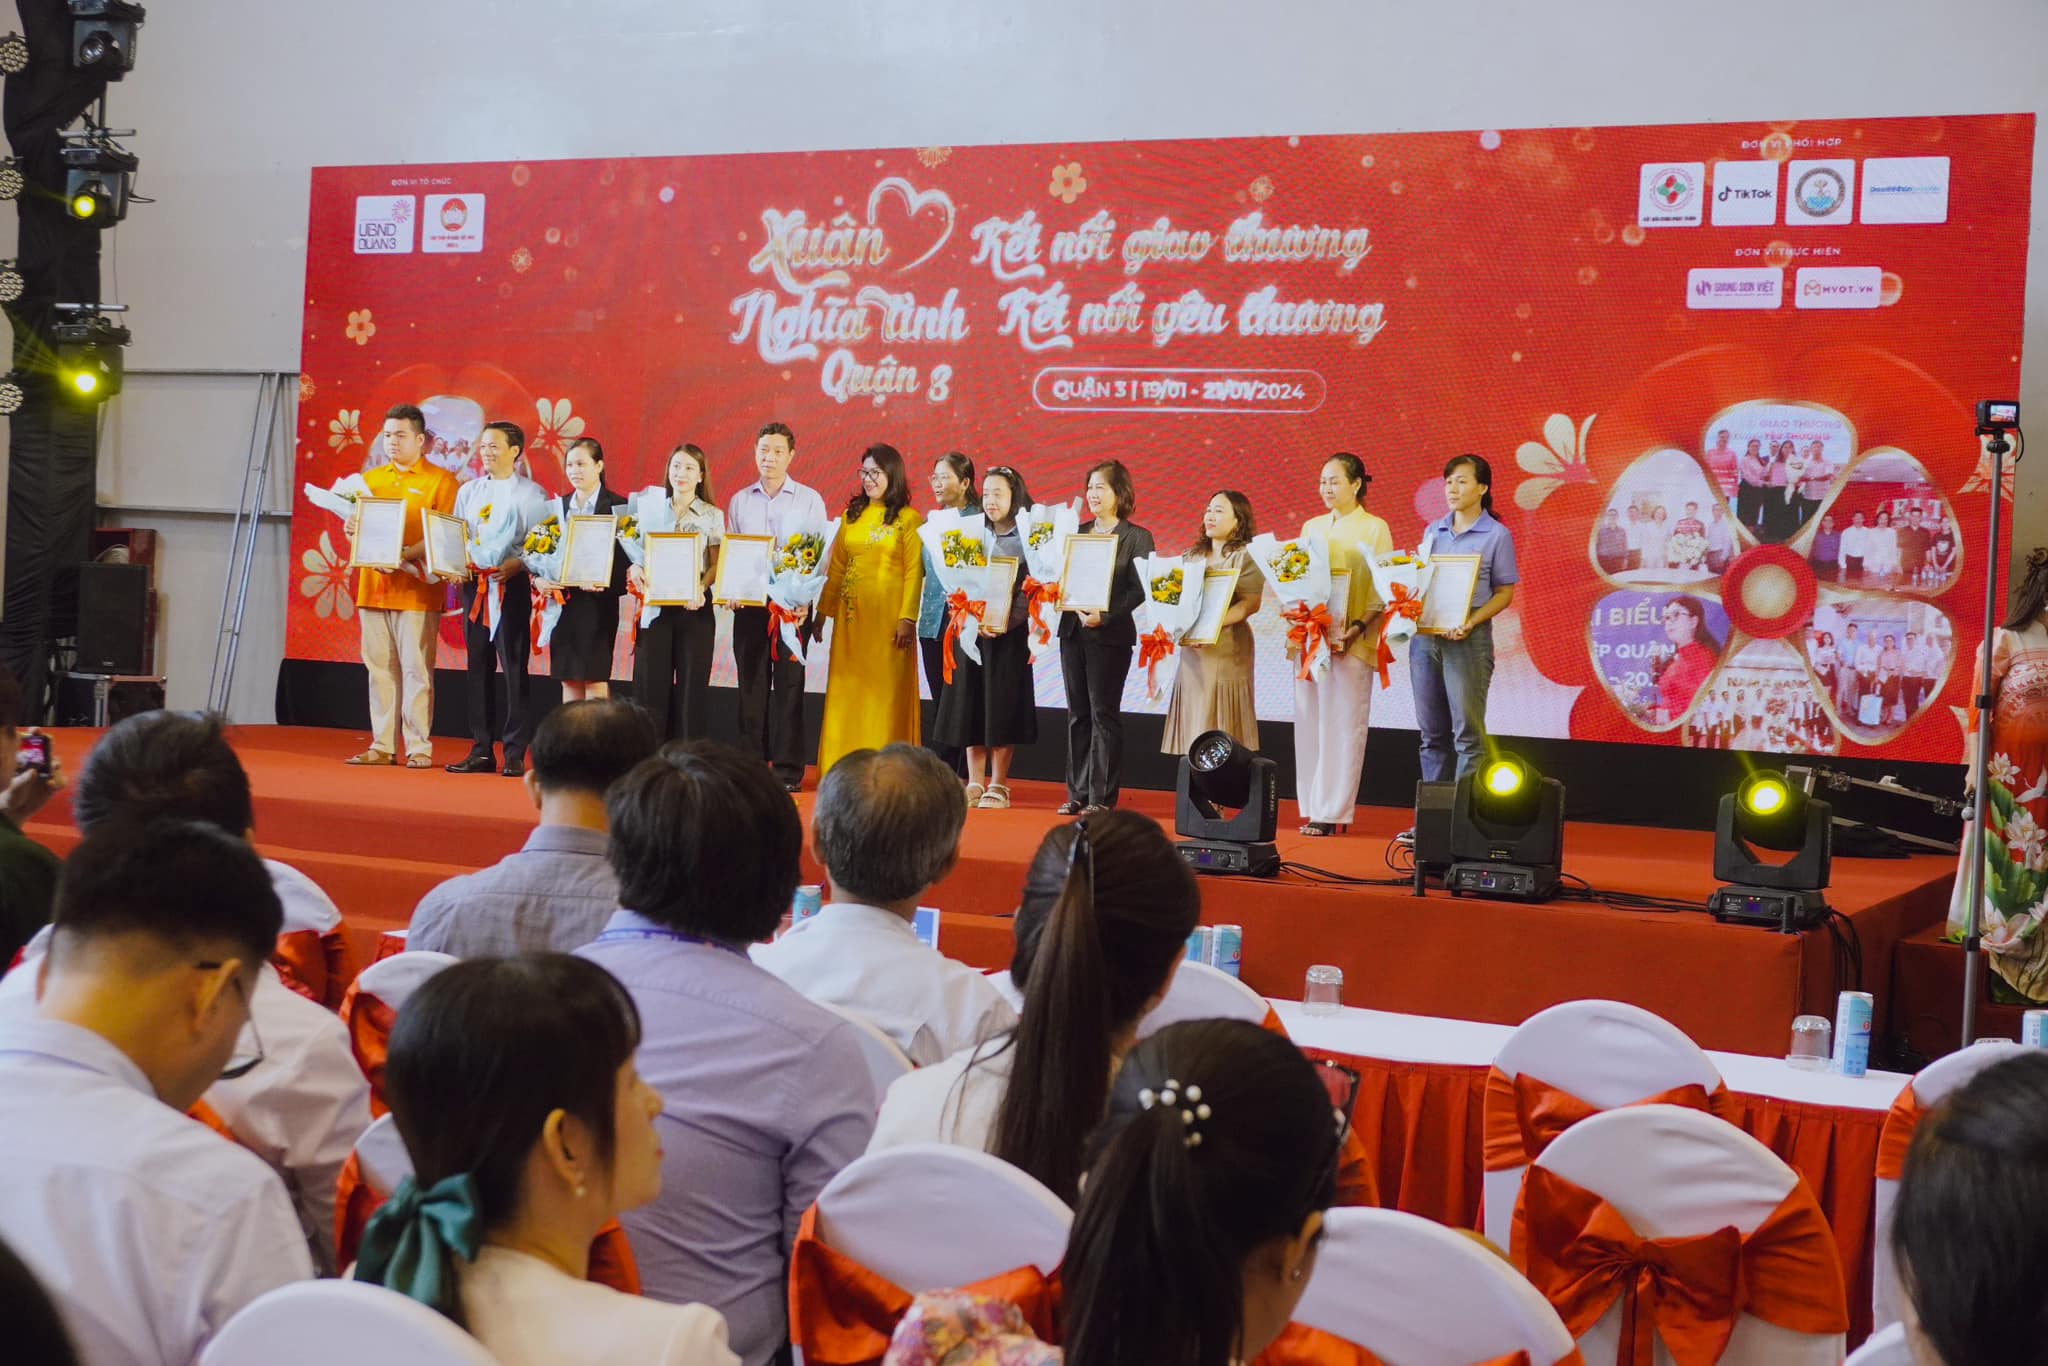 Thẩm mỹ Ngọc Phú đã có mặt tại chương trình “Xuân nghĩa tình: Kết nối yêu thương - Kết nối giao thương” do UBND quận 3 phối hợp Ủy ban MTTQ quận 3 kết hợp tổ chức